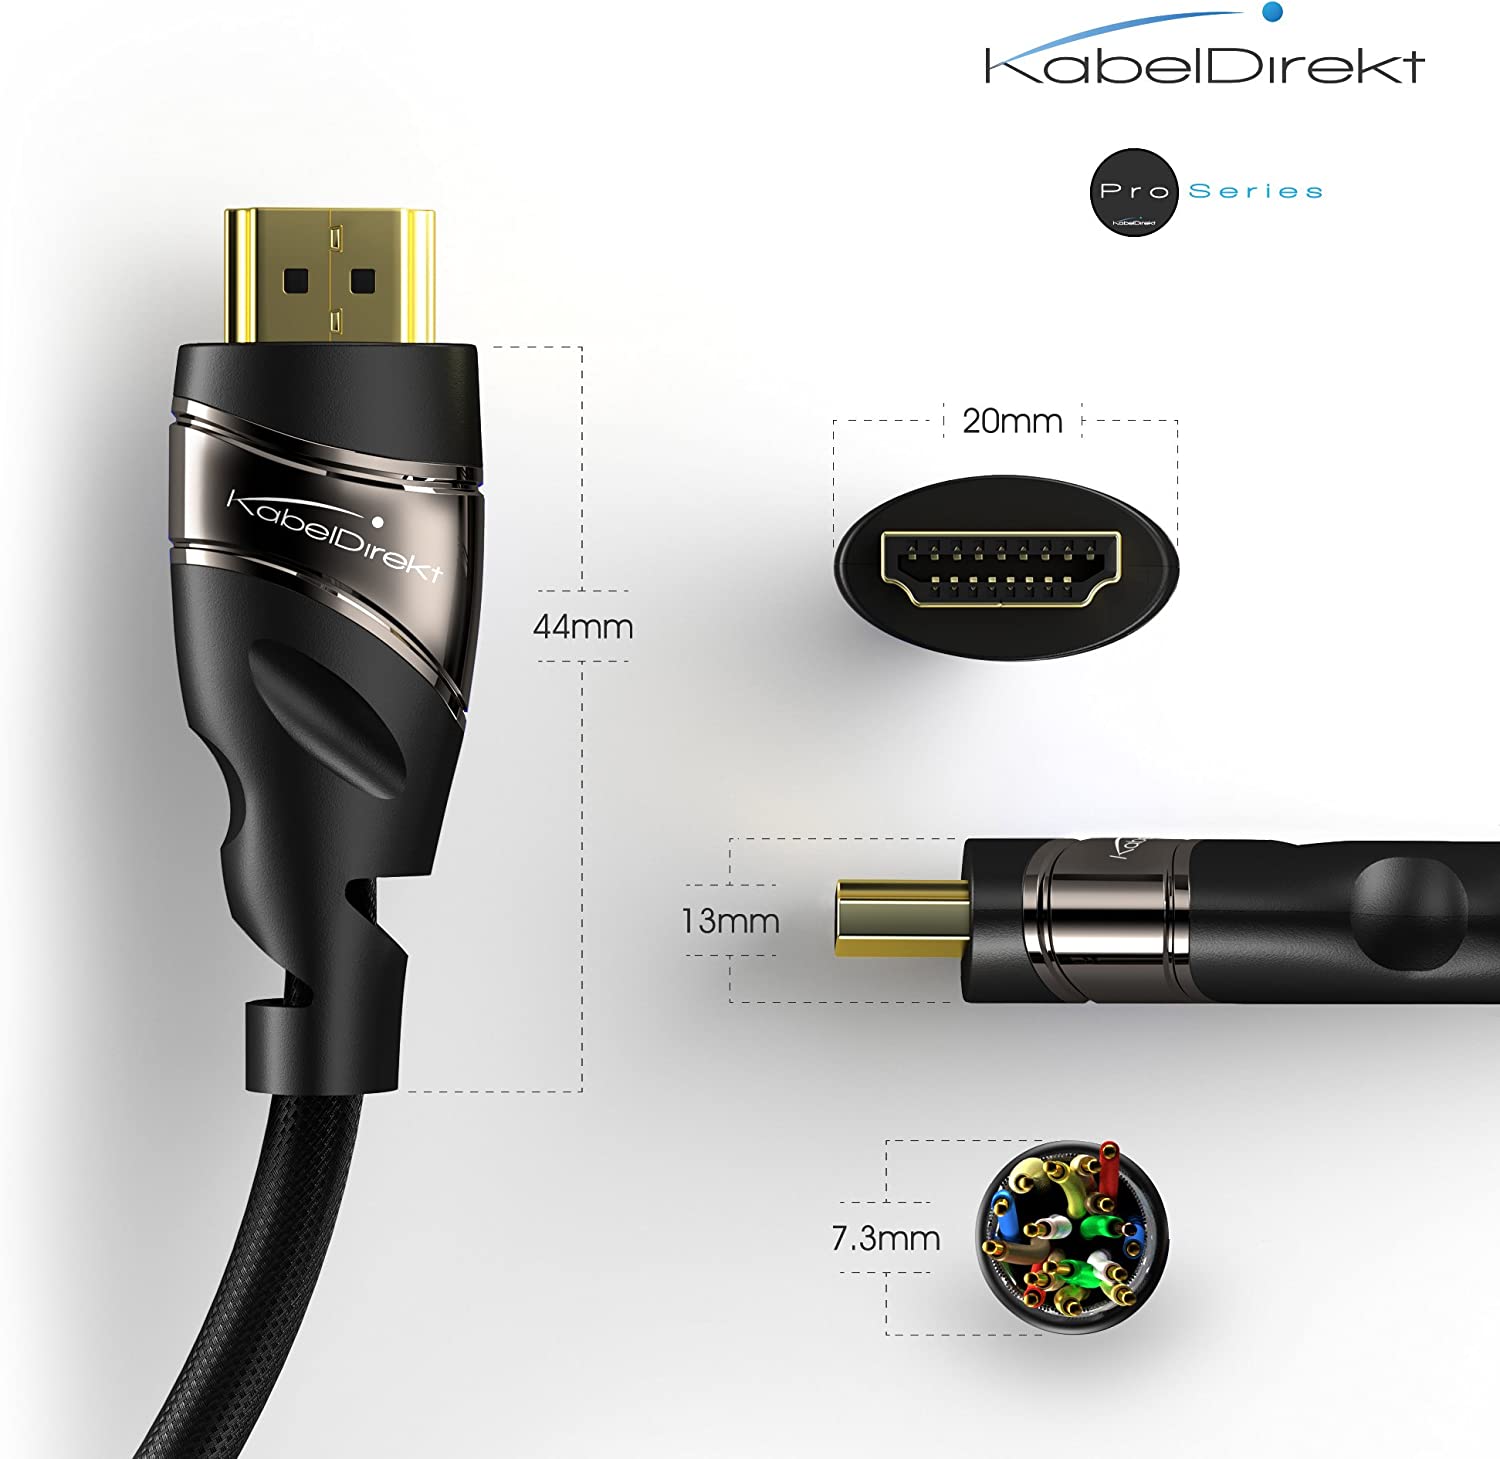 สาย HDMI ของ KabelDirekt Pro Series